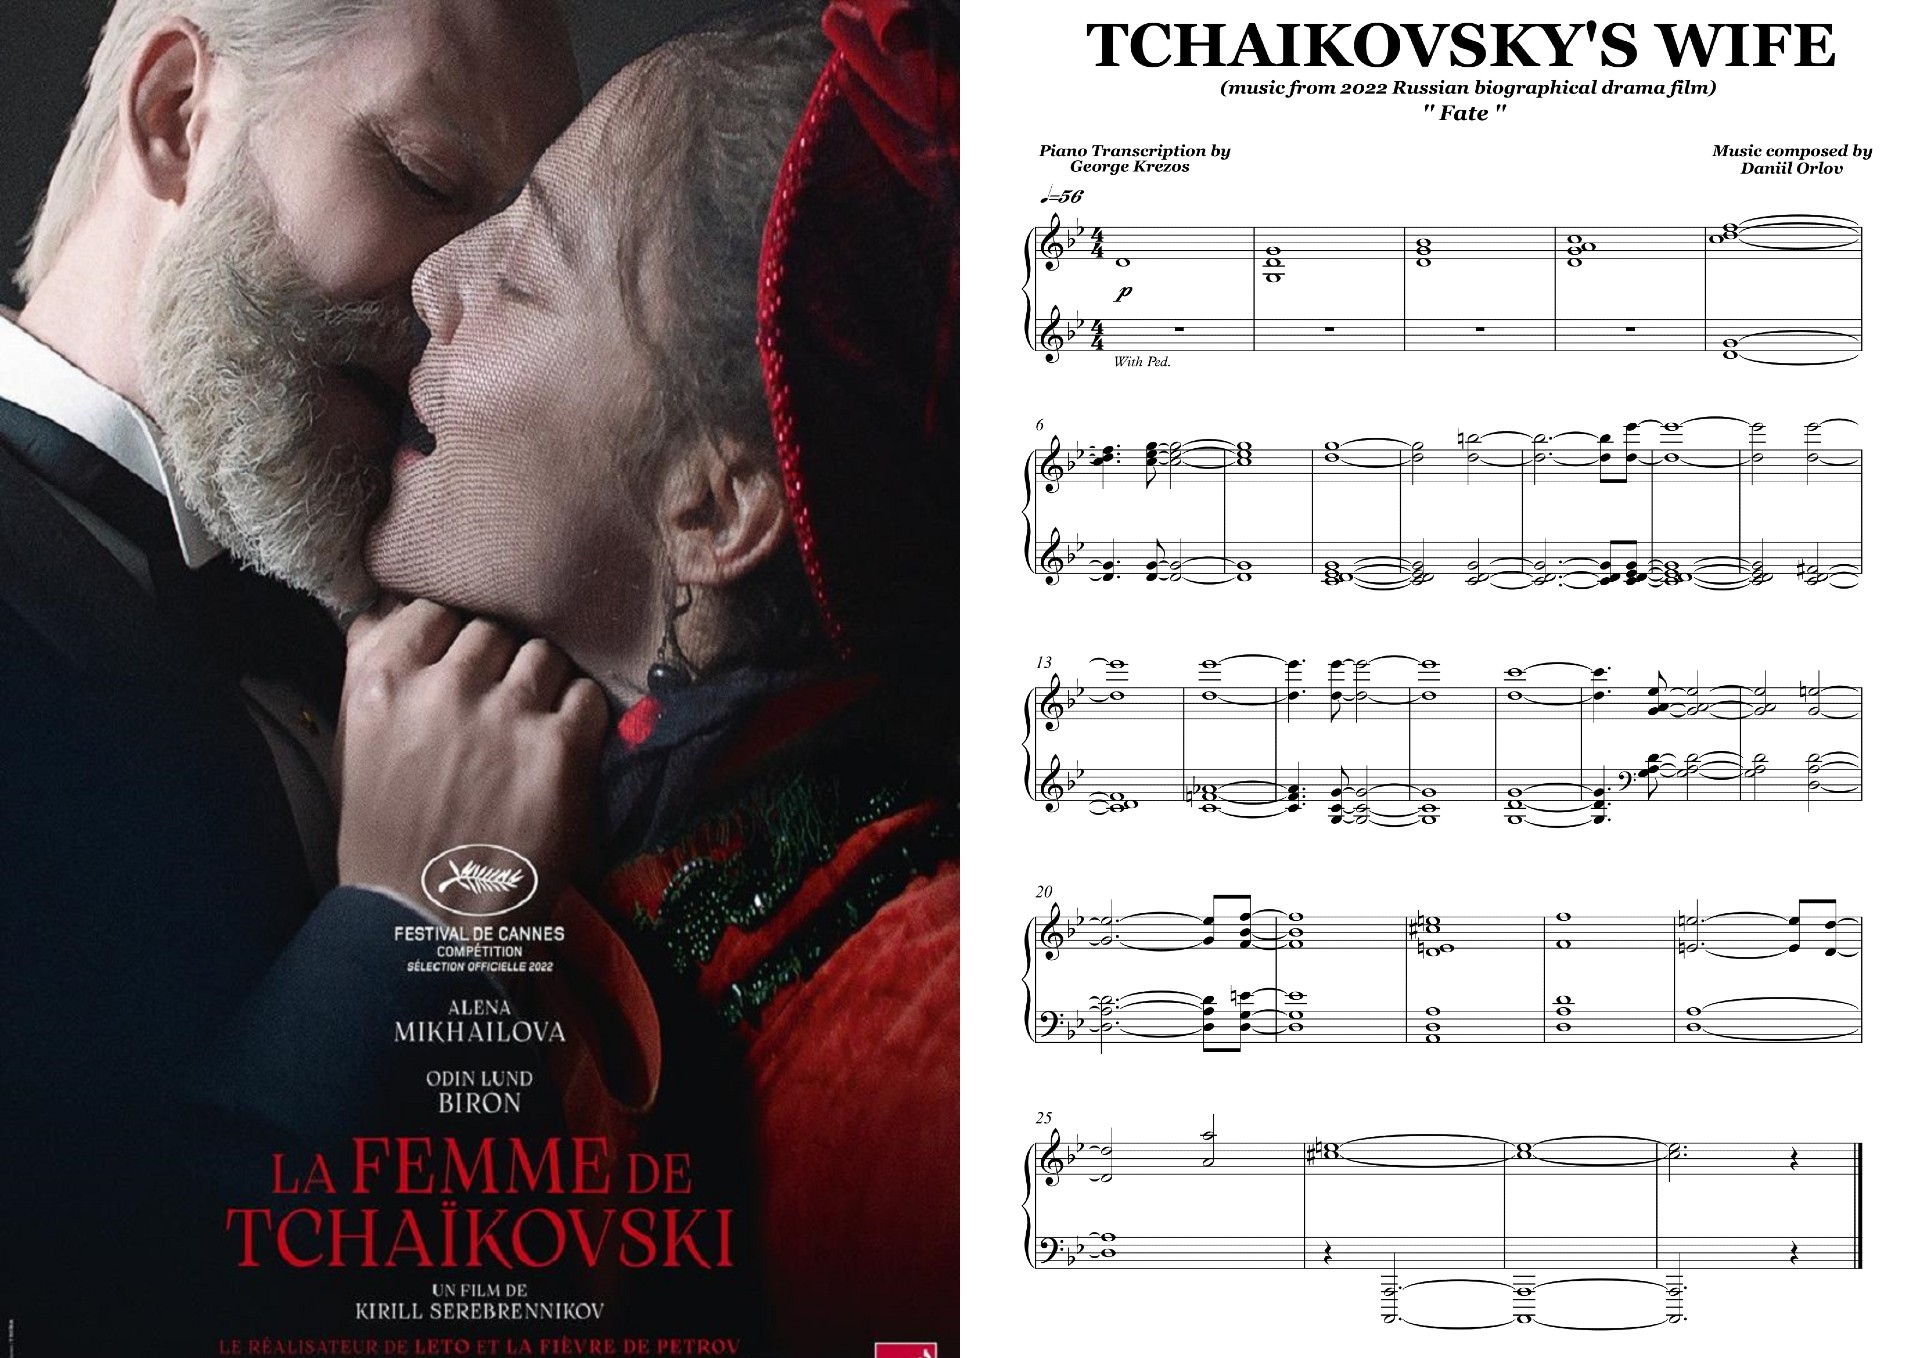 TCHAIKOVSKY'S WIFE - Fate.jpg